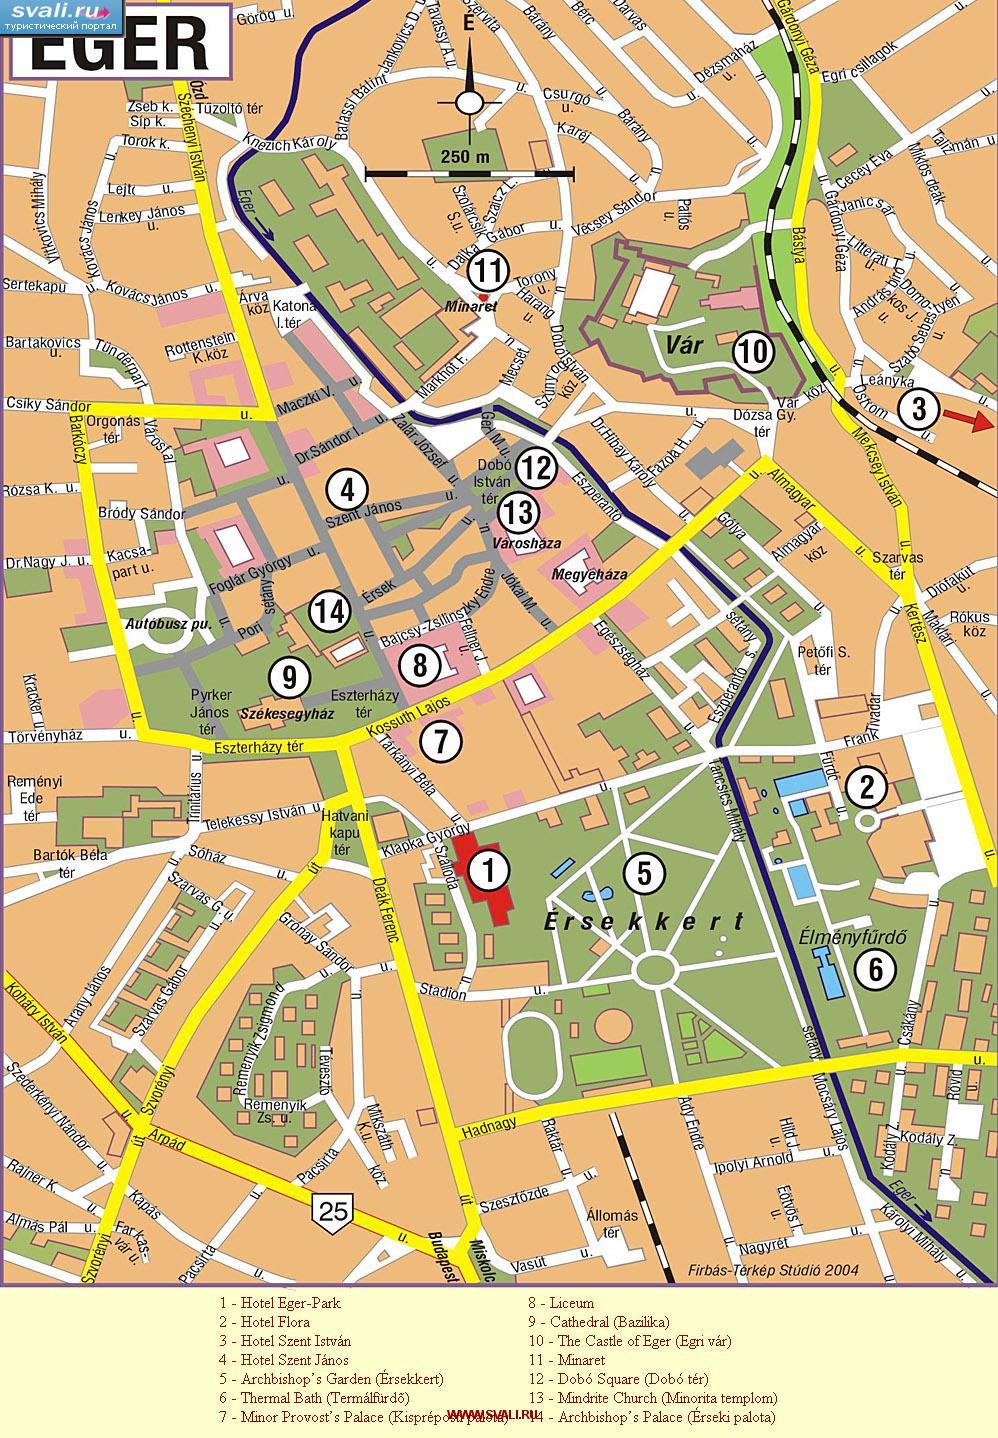 Подробная карта города Эгер (Eger), Венгрия (венг.)